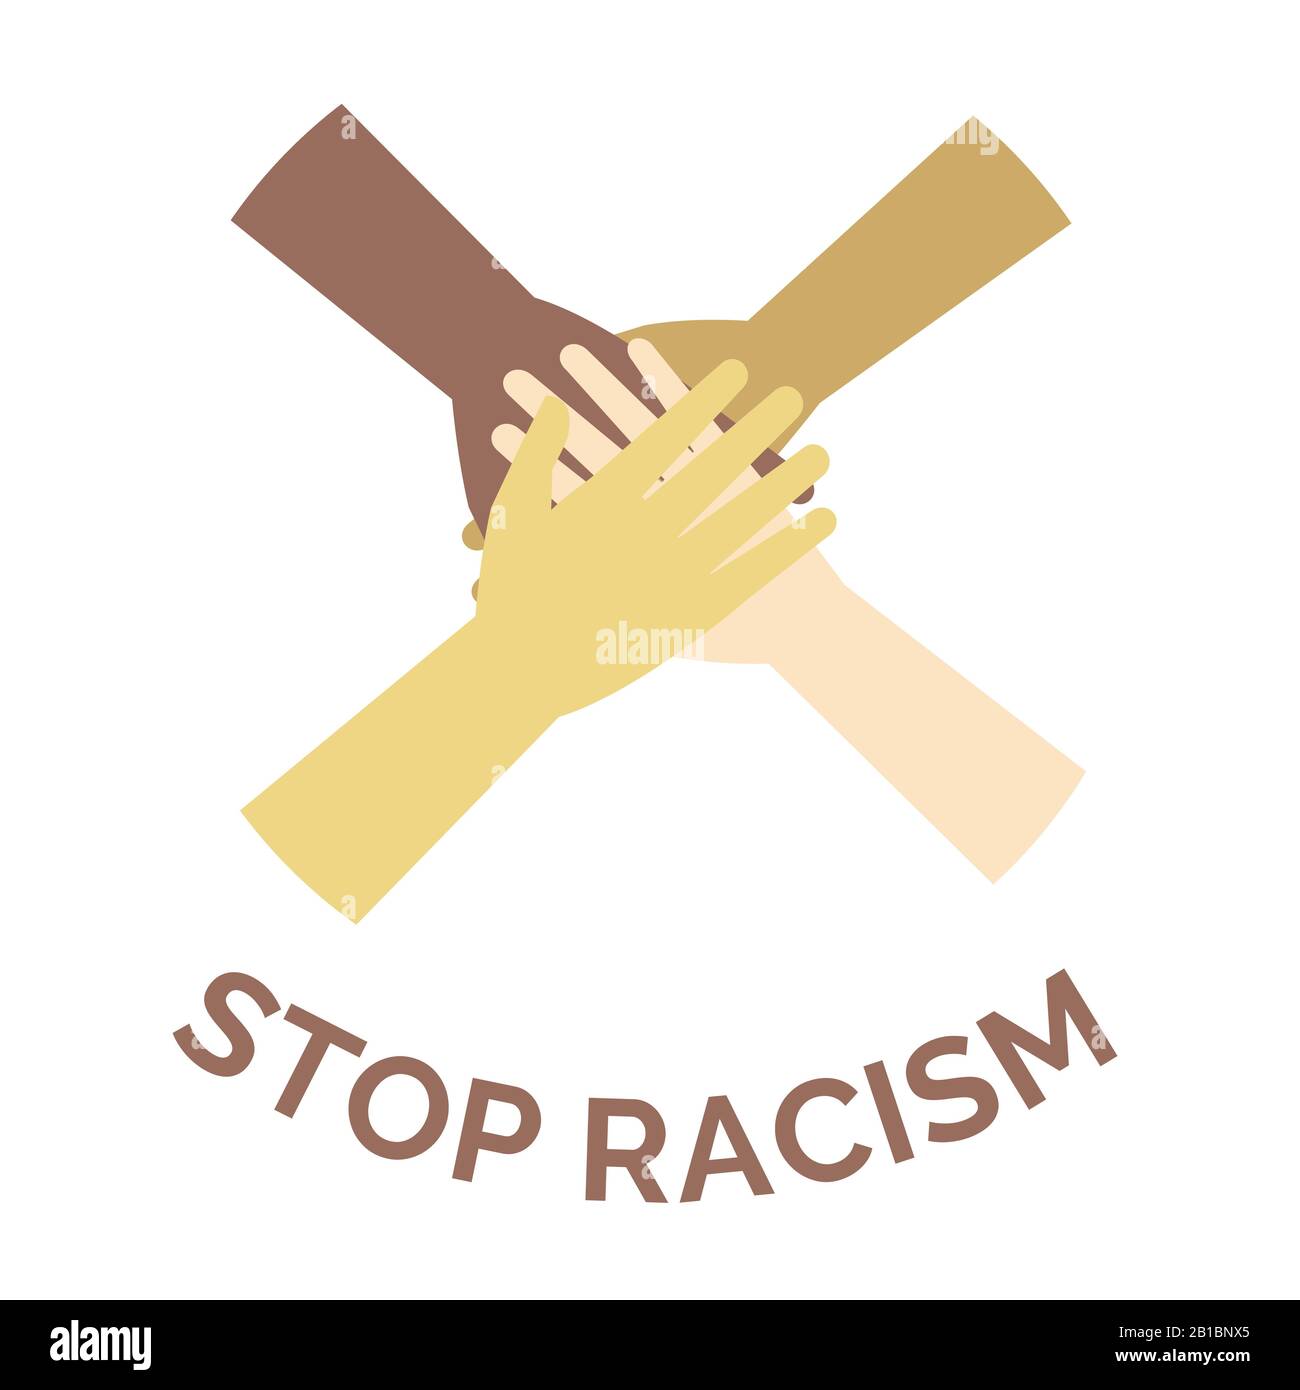 Rassismus-Vektor-Banner-Konzept stoppen. Hände verschiedener Hautfarbe und verschiedener Rassen Menschen, die Cartoon-Illustration zusammenfügen. Plakat gegen Rassismus und Diskriminierung, alle Menschen sind gleich. Stock Vektor